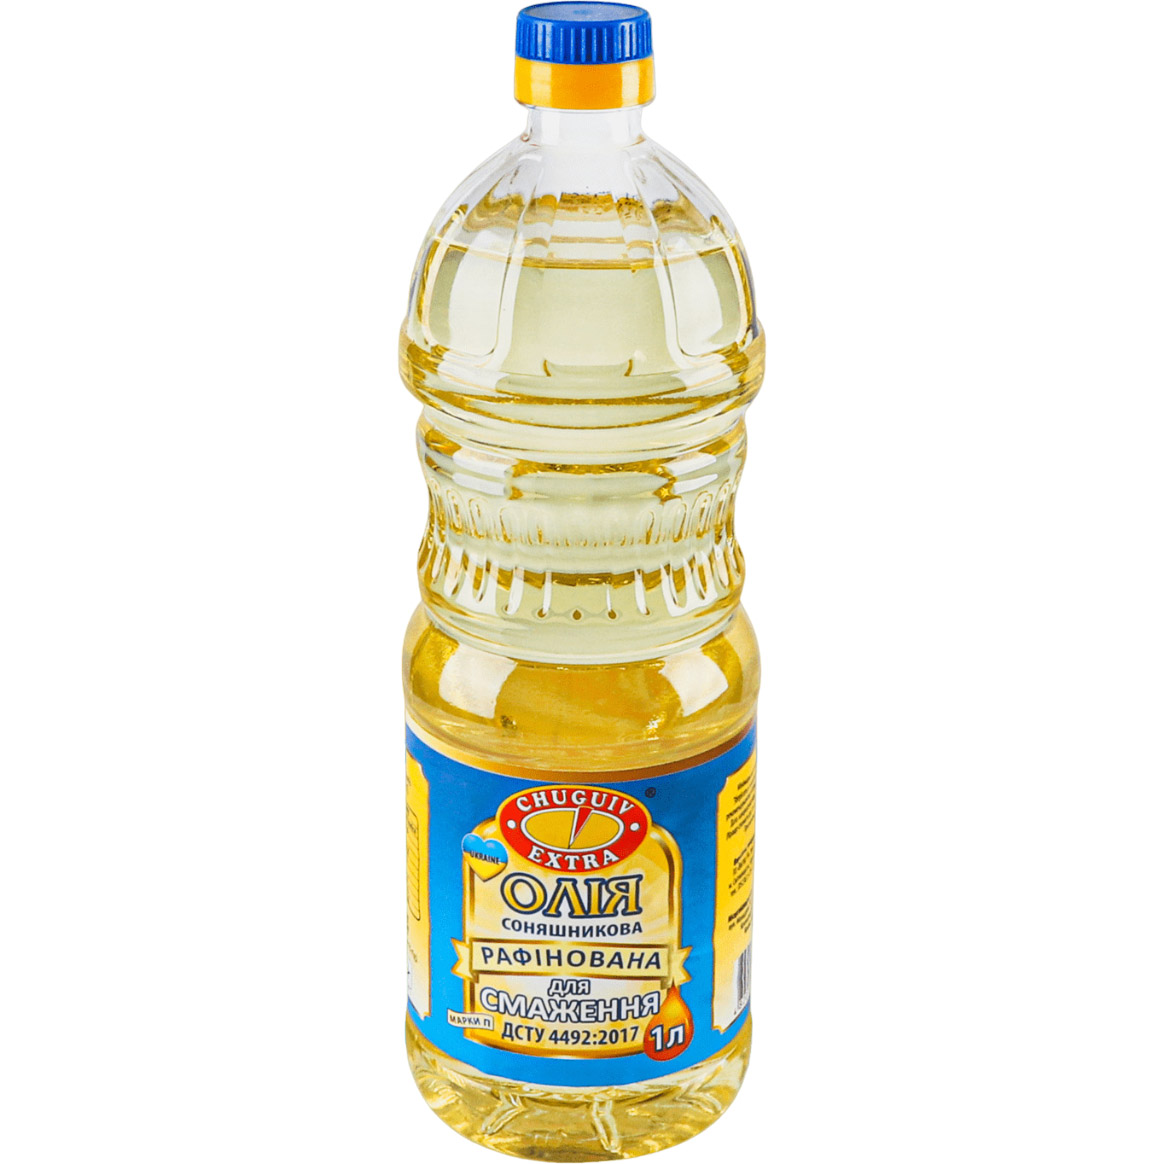 Олія соняшникова Chuguiv Extra для смаження 1 л (921298) - фото 1